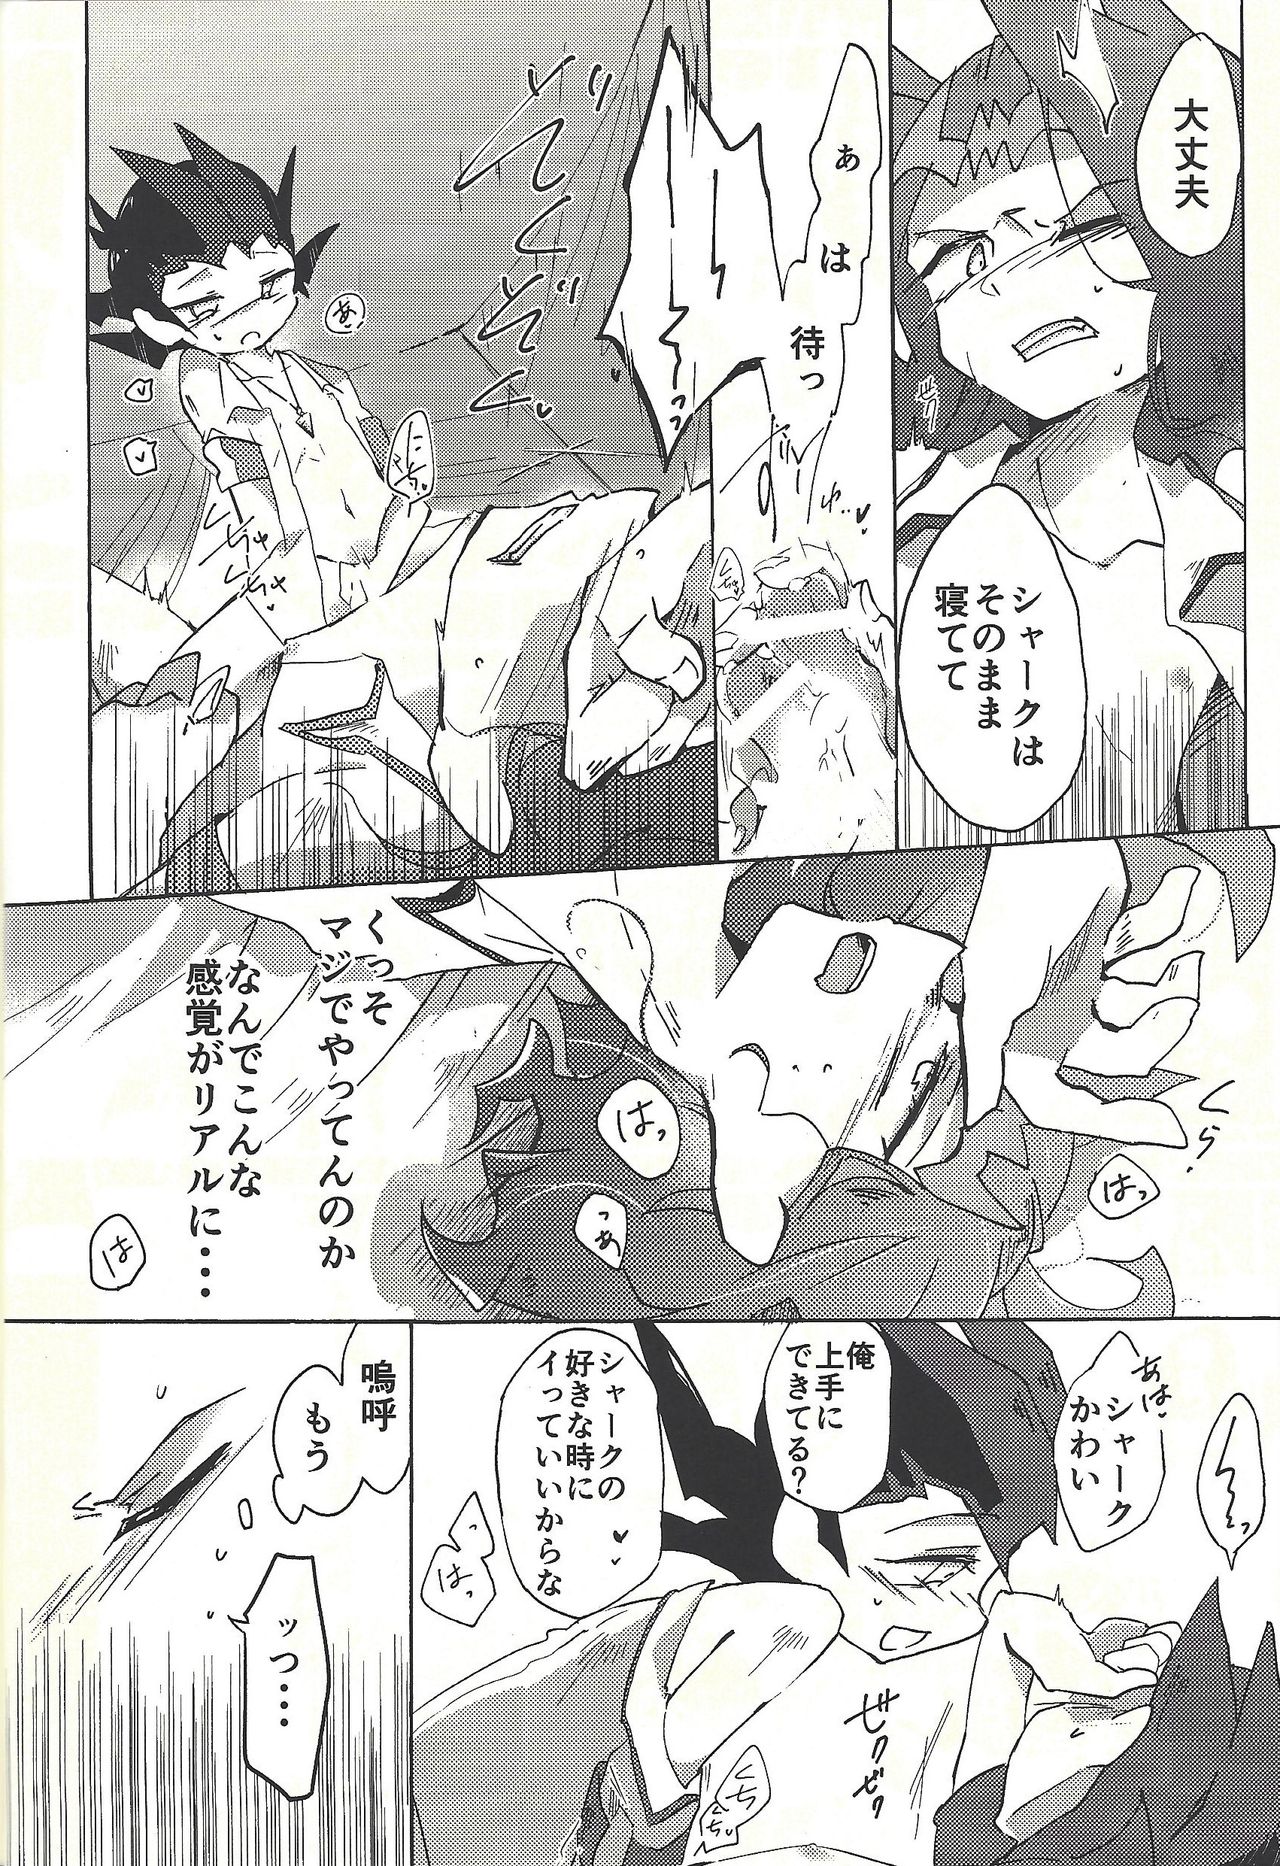 (Ore no Turn vs. 2019) [Wakaru mushi (623)] ☓ Yume resu fumin rēsu (Yu-Gi-Oh! ZEXAL) page 17 full